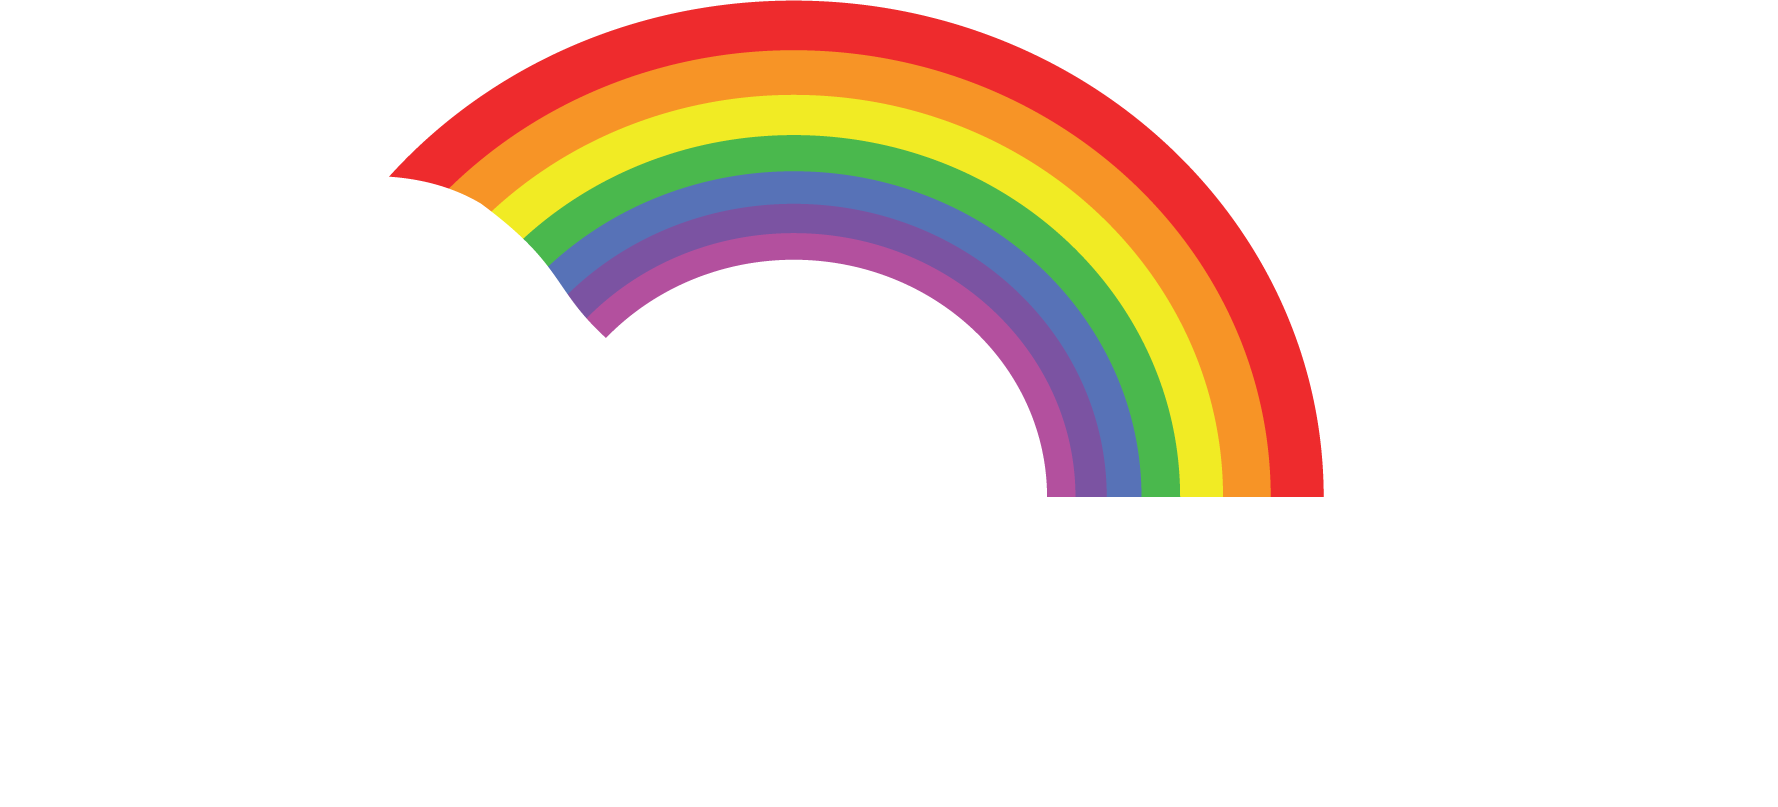 Rainbow Valley Campground